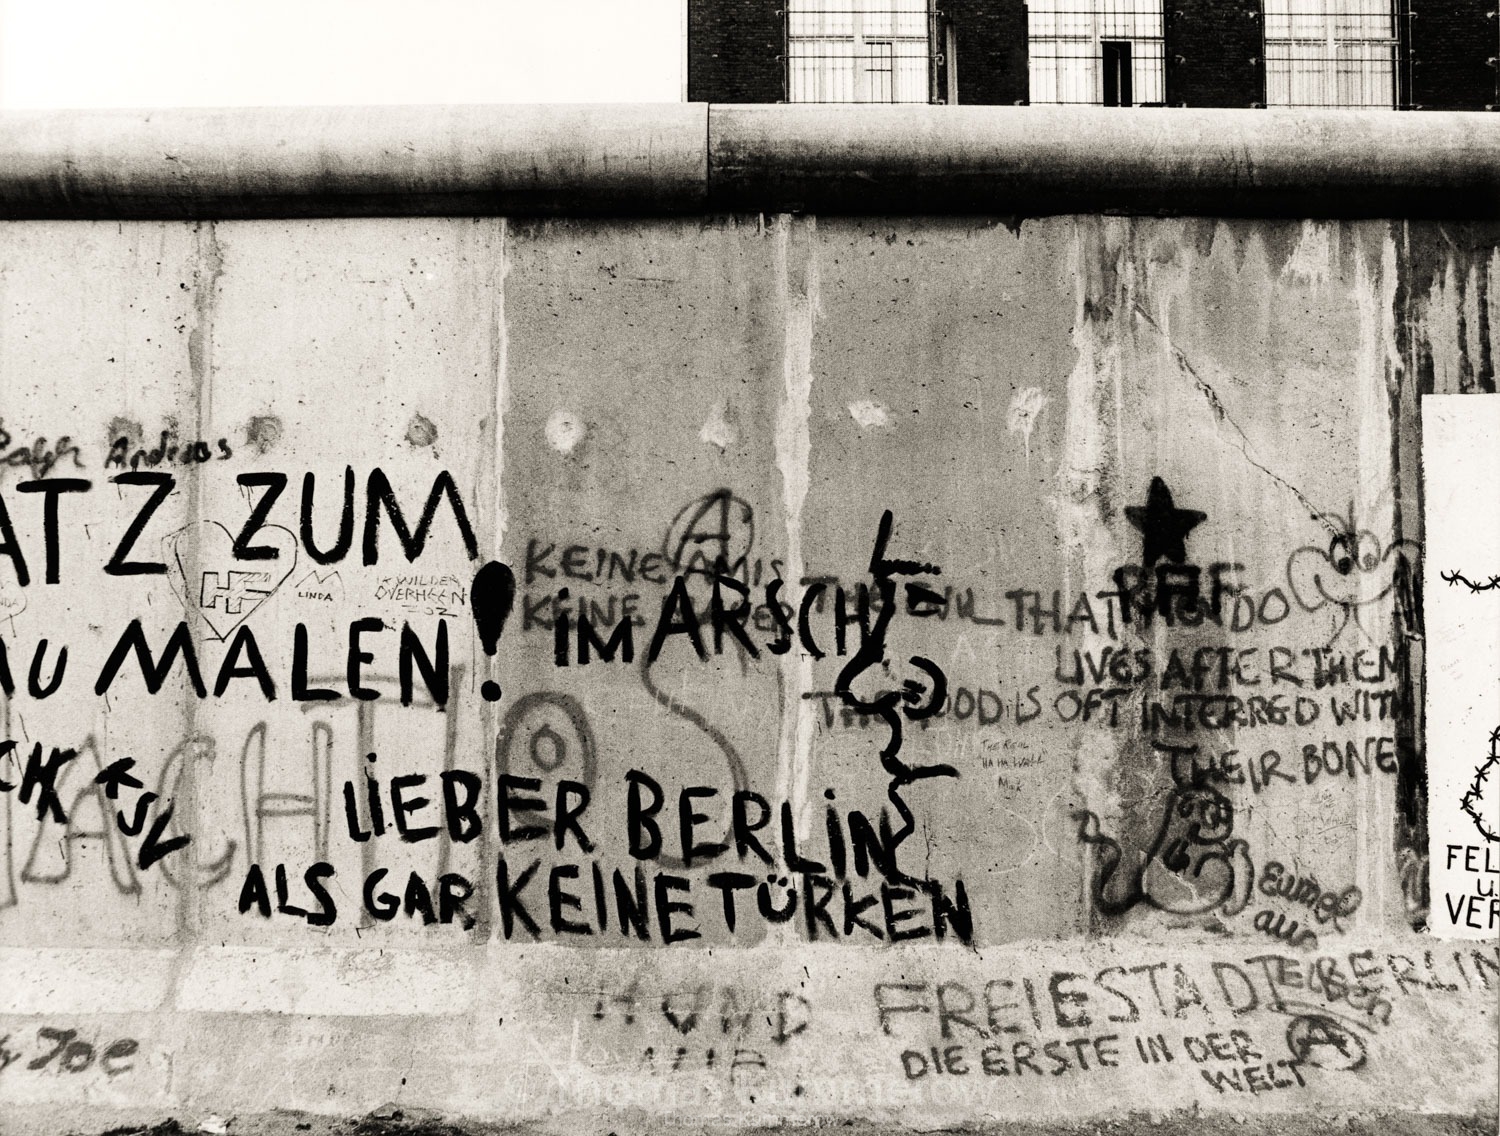 31-berlin-wall-coldwar-border-kummerow-0445